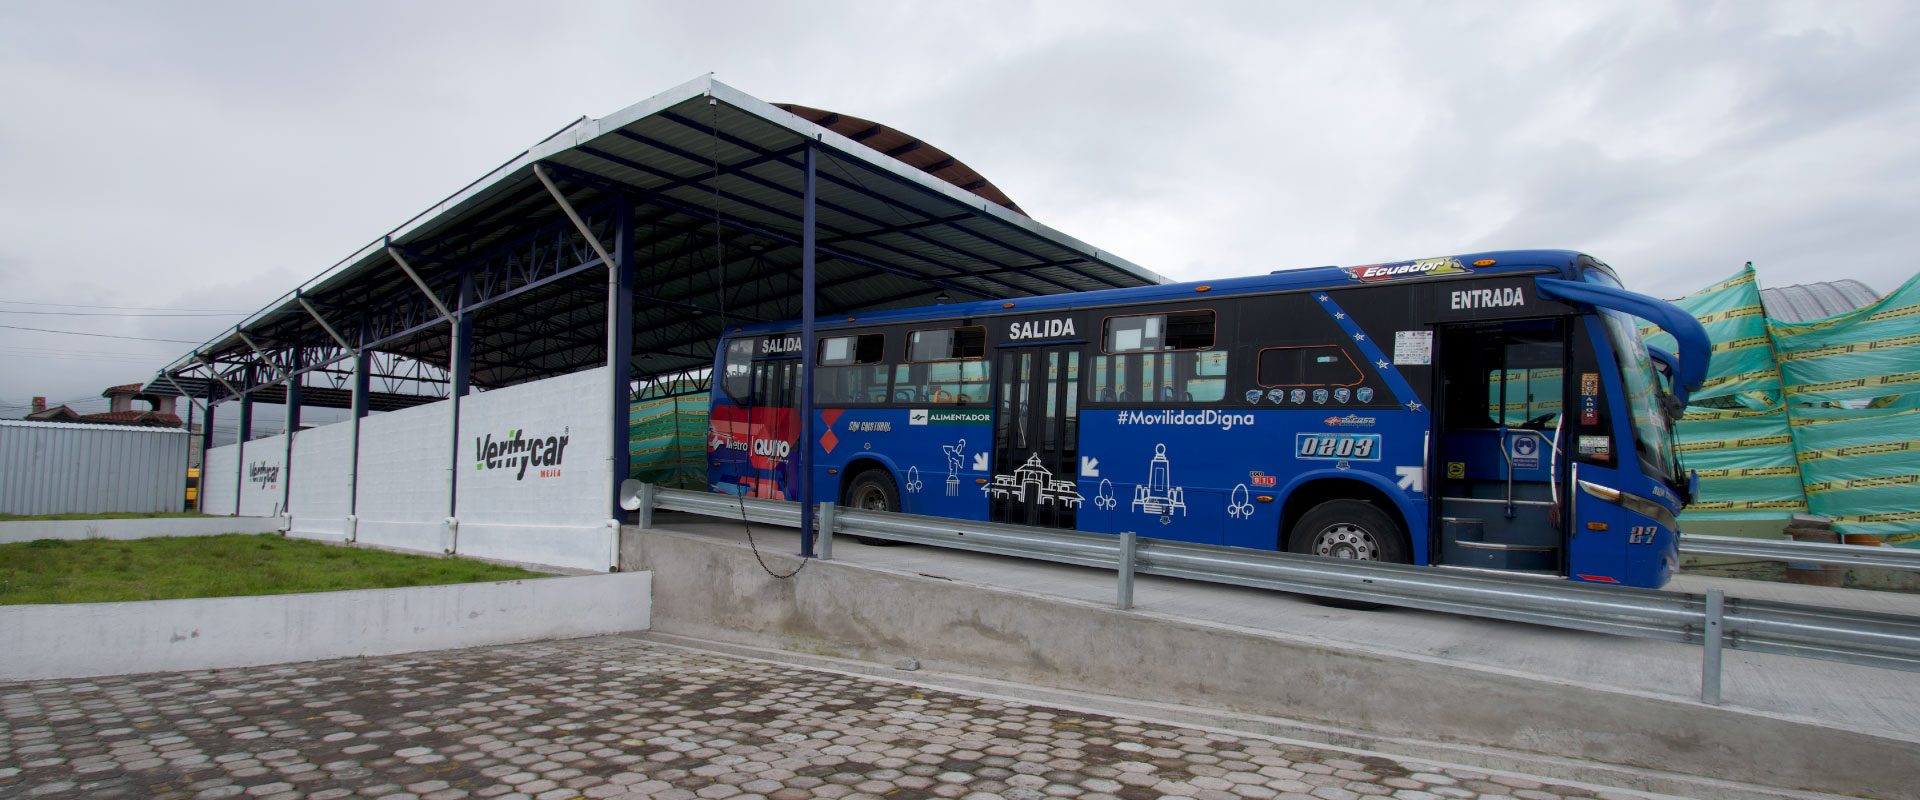 revisión_tecnico_mecanica_verifycar_mejia_buses